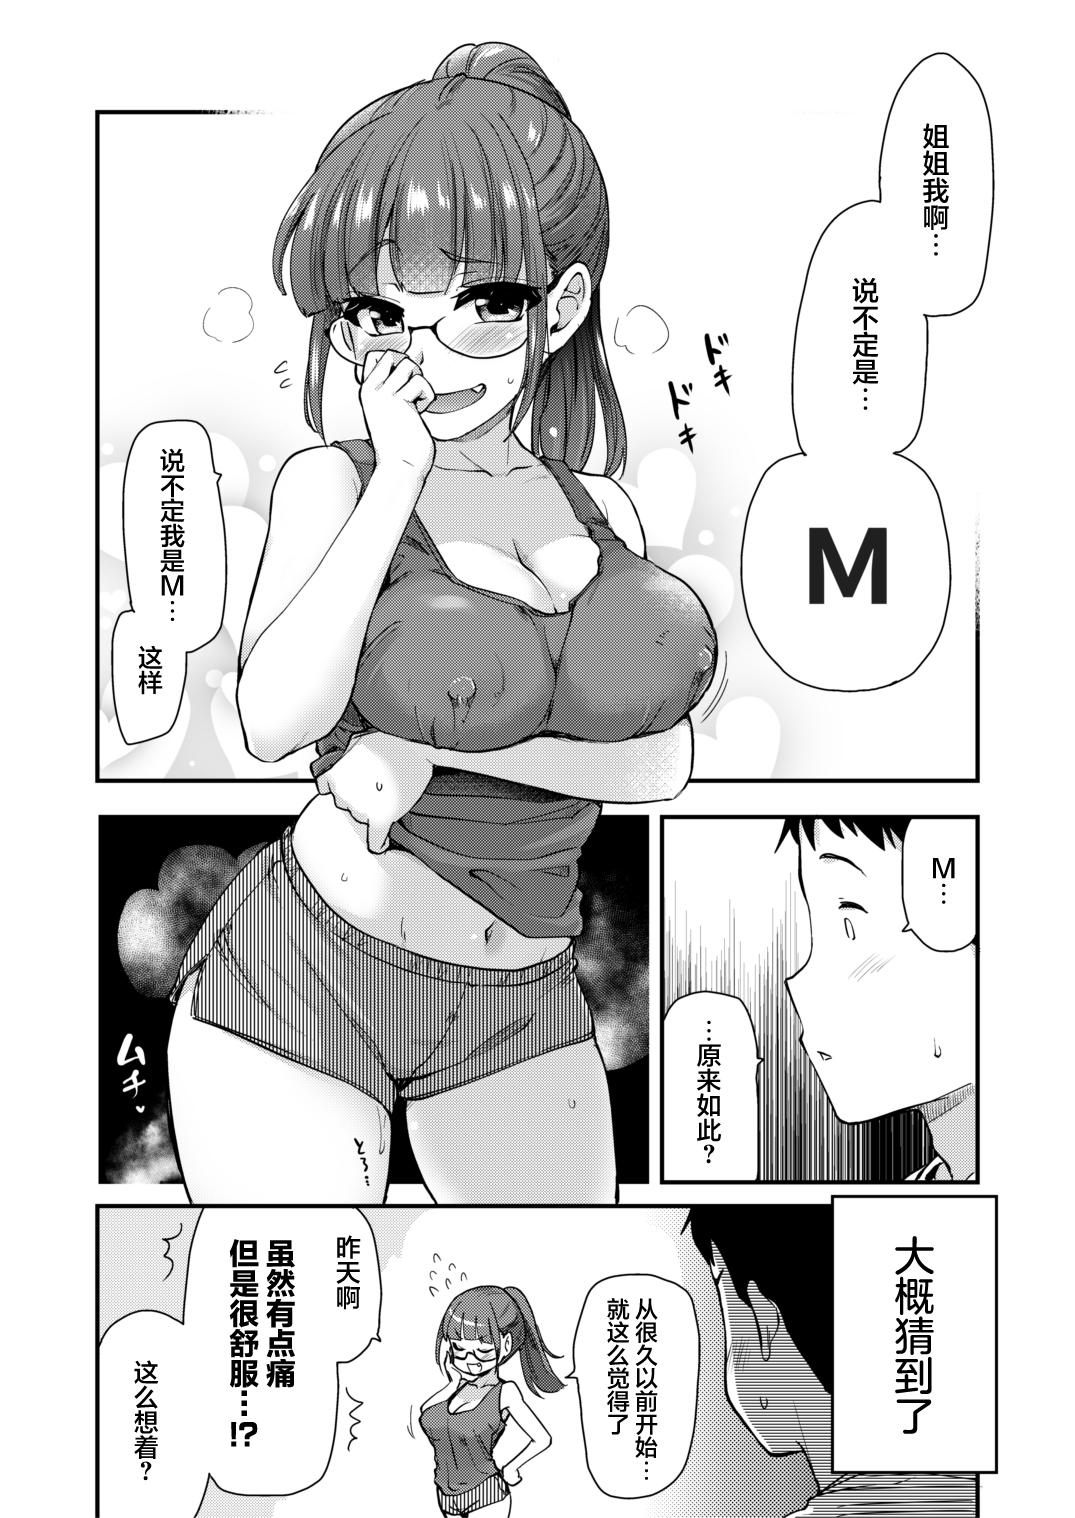 Massage Sex Ane no Seiyoku Shori wa Ototo ga Suru Monoda to, Gitei wa Omoi Hajimete Iru. - Original Shesafreak - Page 8